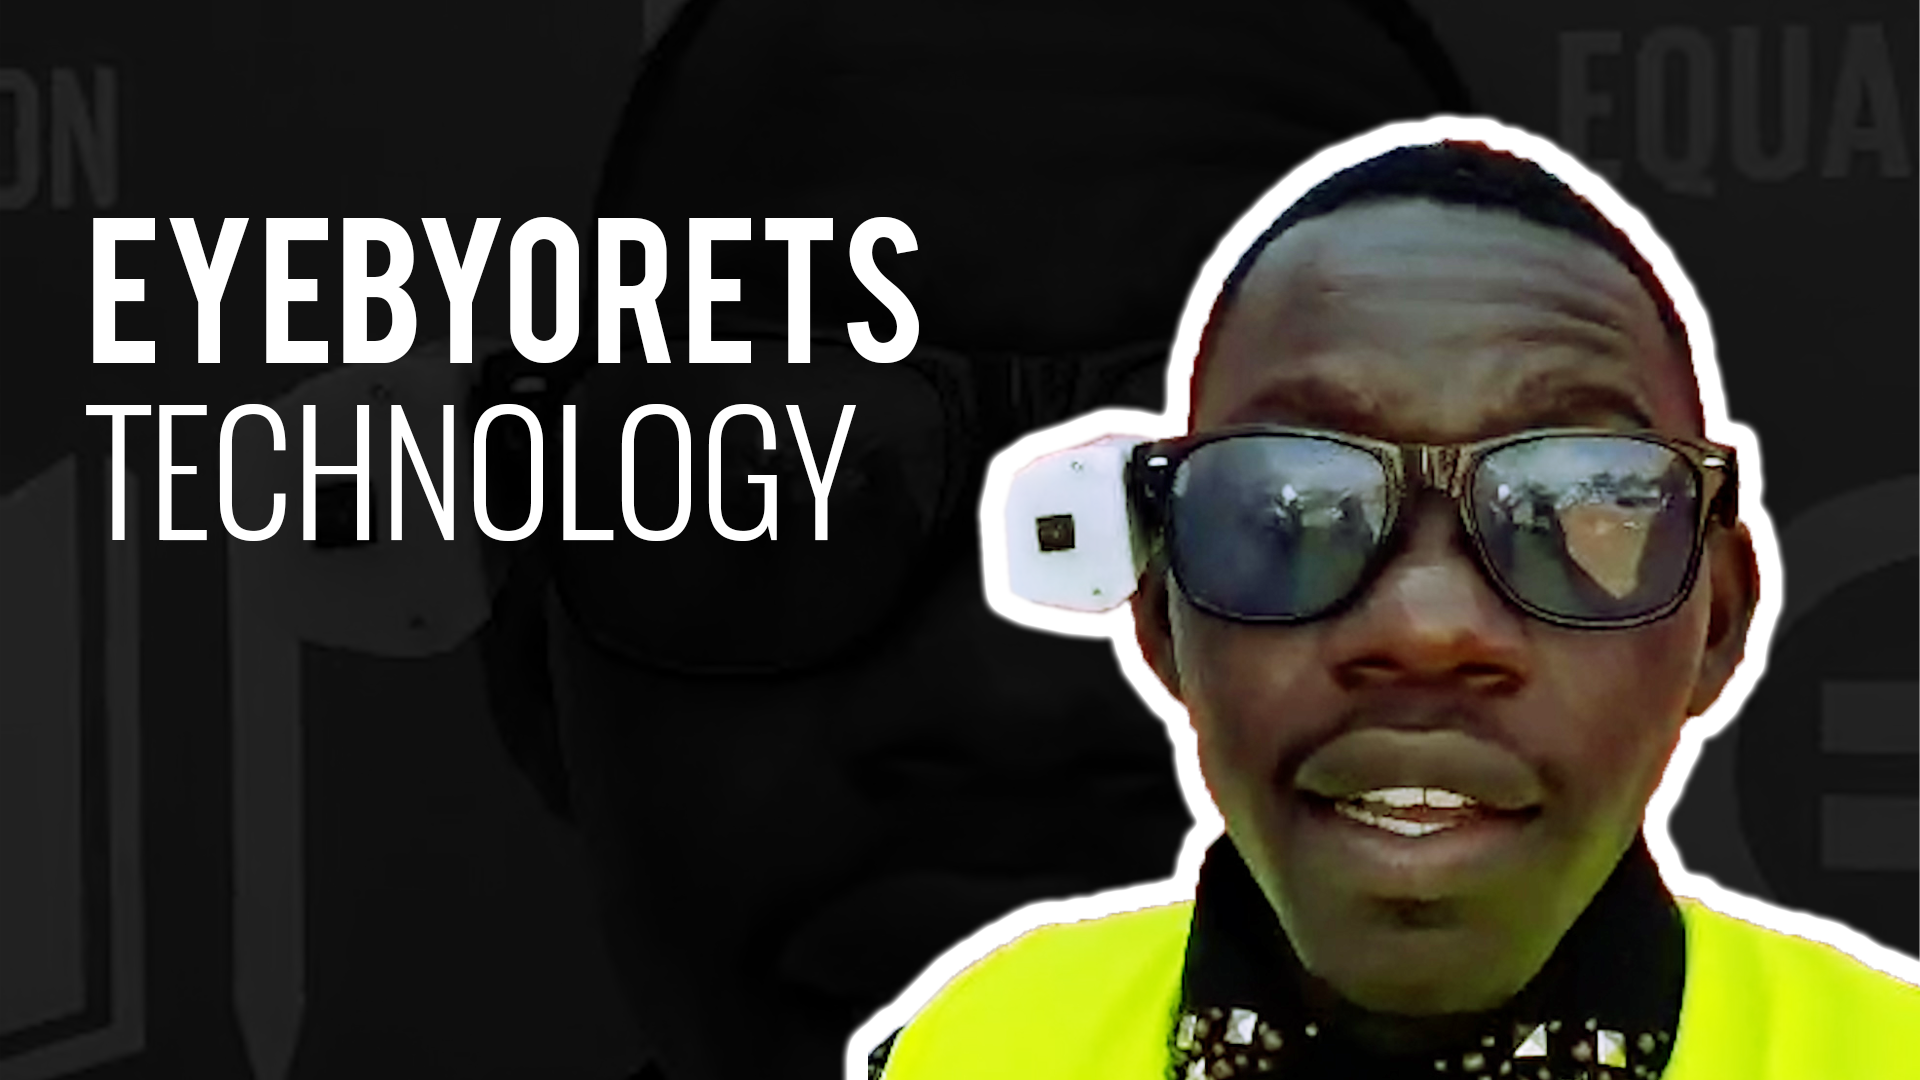 Eyebyorets technology